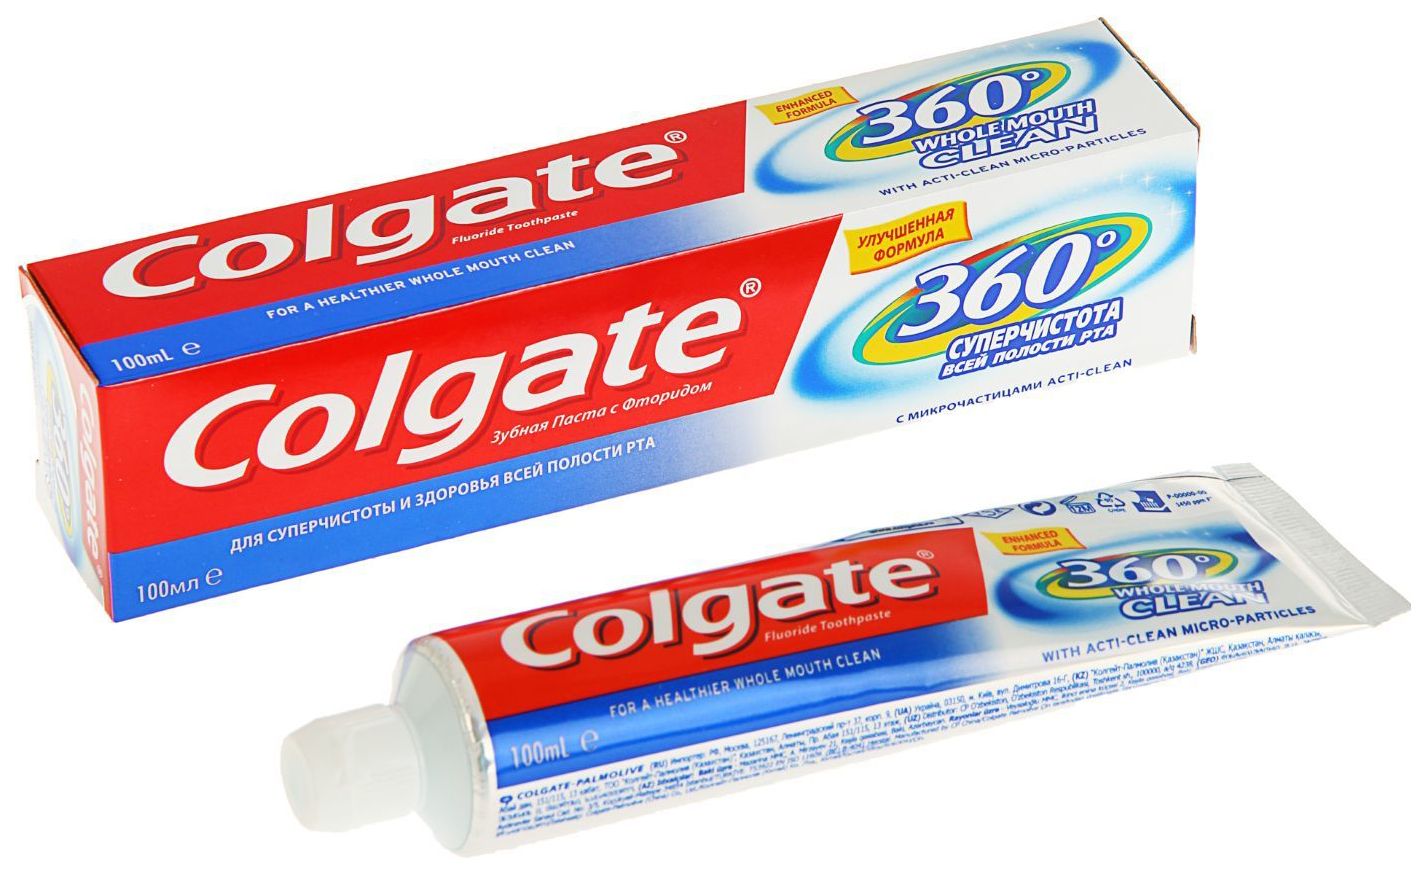 Зубные пасты для полости рта. Колгейт 360 зубная паста. Зубная паста Колгейт 360 Суперчистота. Зубная паста Колгейт ассортимент. Зубная паста Mini Colgate.